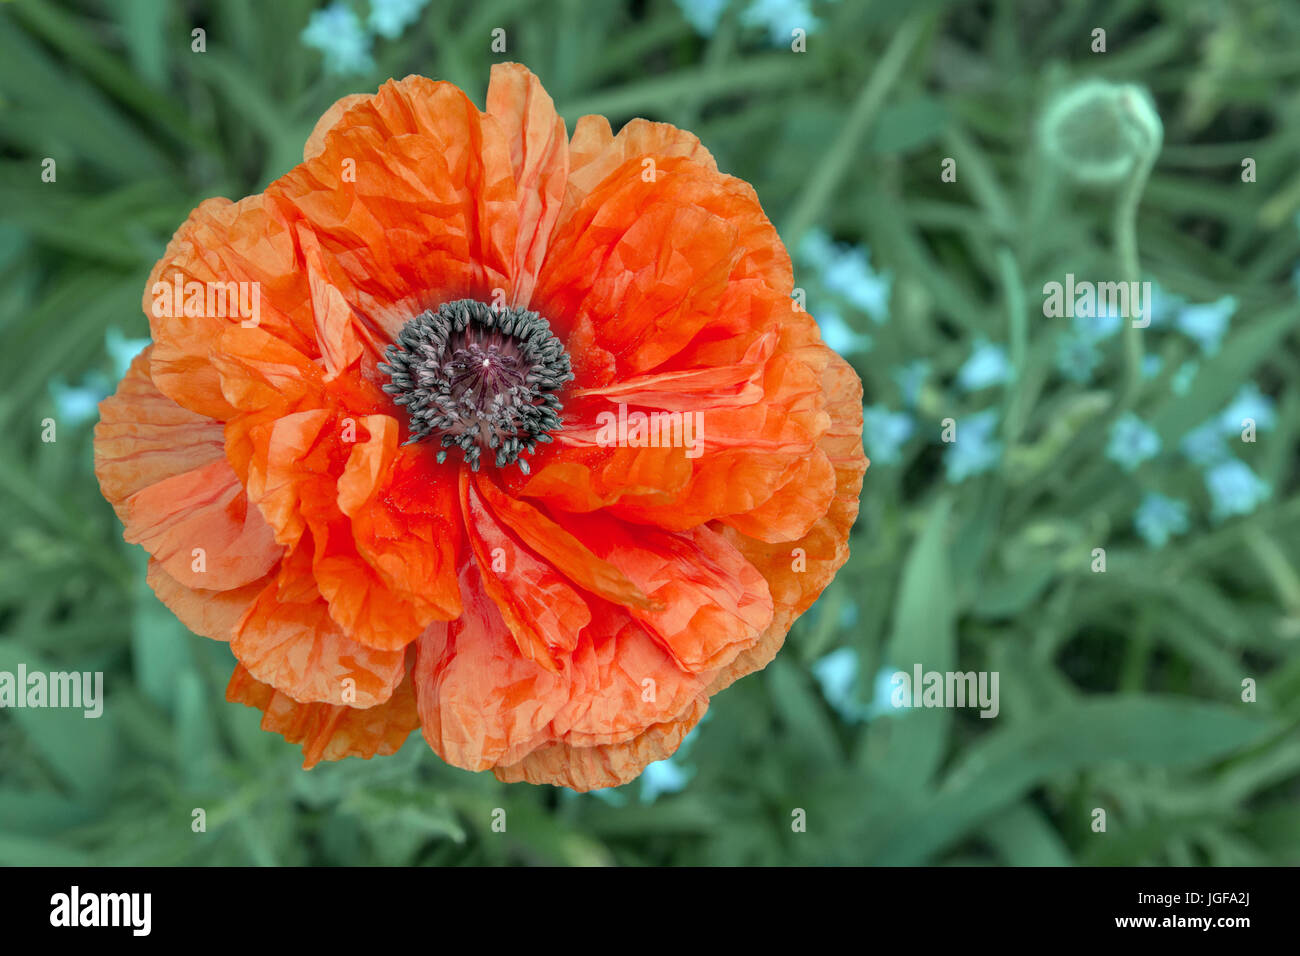 Orange orientalische Mohn in voller Blüte gegen einen grünen Rücken Boden mit Platz für Text. Stockfoto